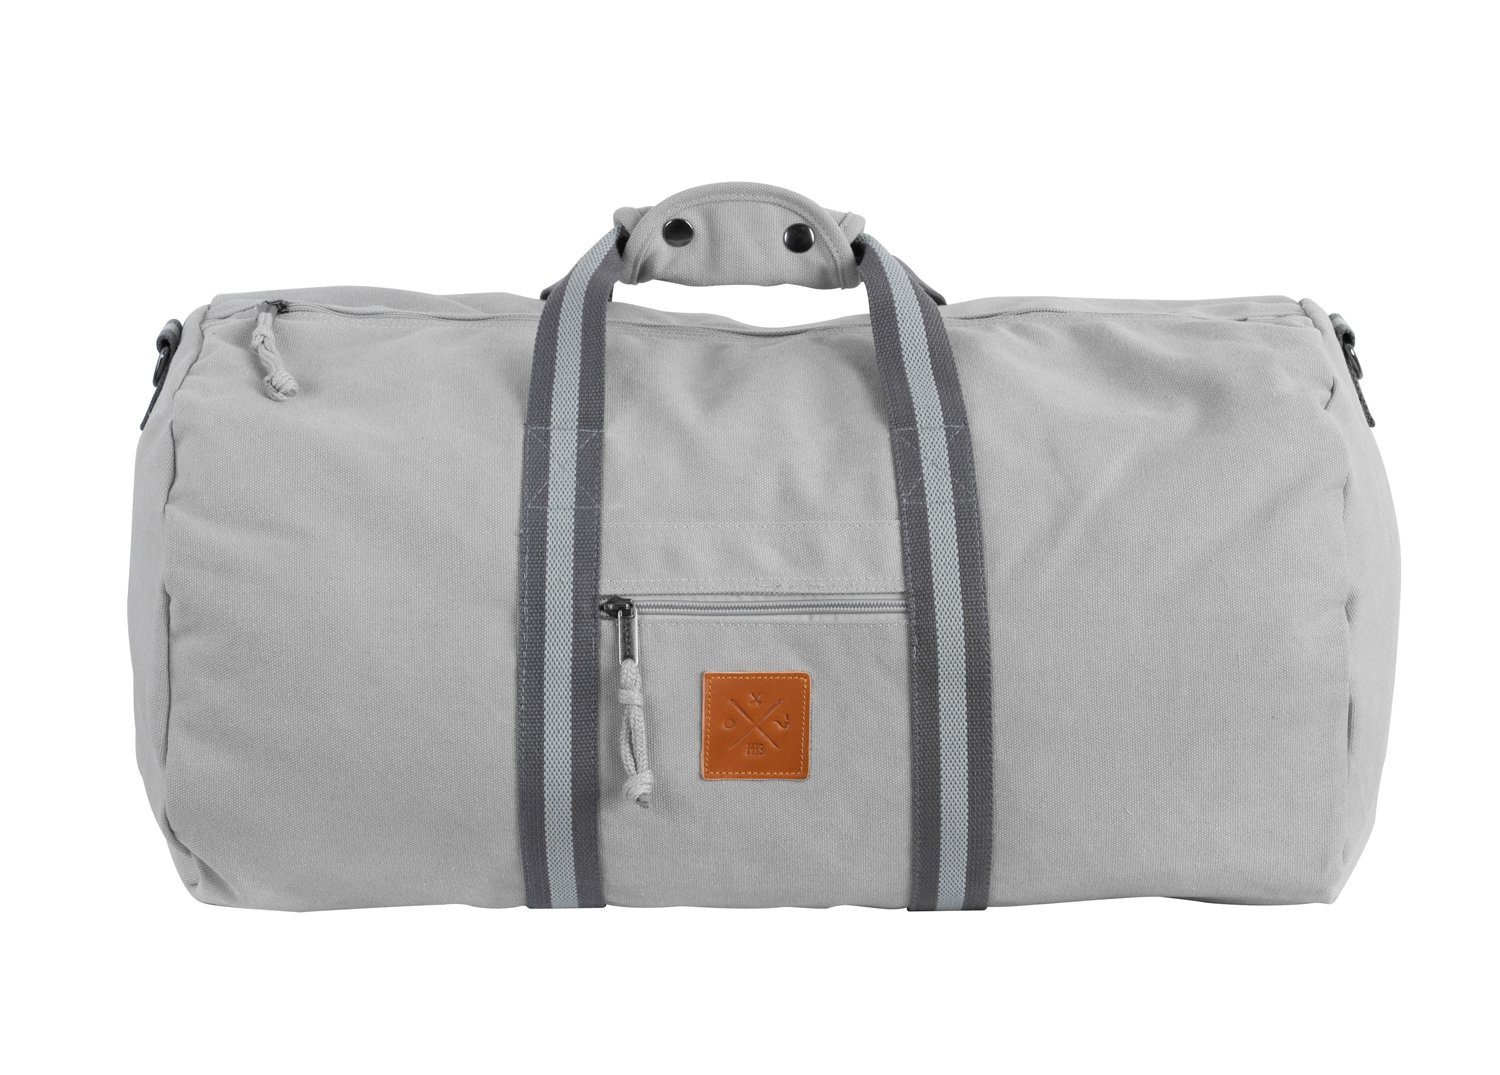 Manufaktur13 Sporttasche Canvas Duffel Bag - Sporttasche, Barrel Bag, Reisetasche, 45L Fassungsvermögen Asphalt | Sporttaschen